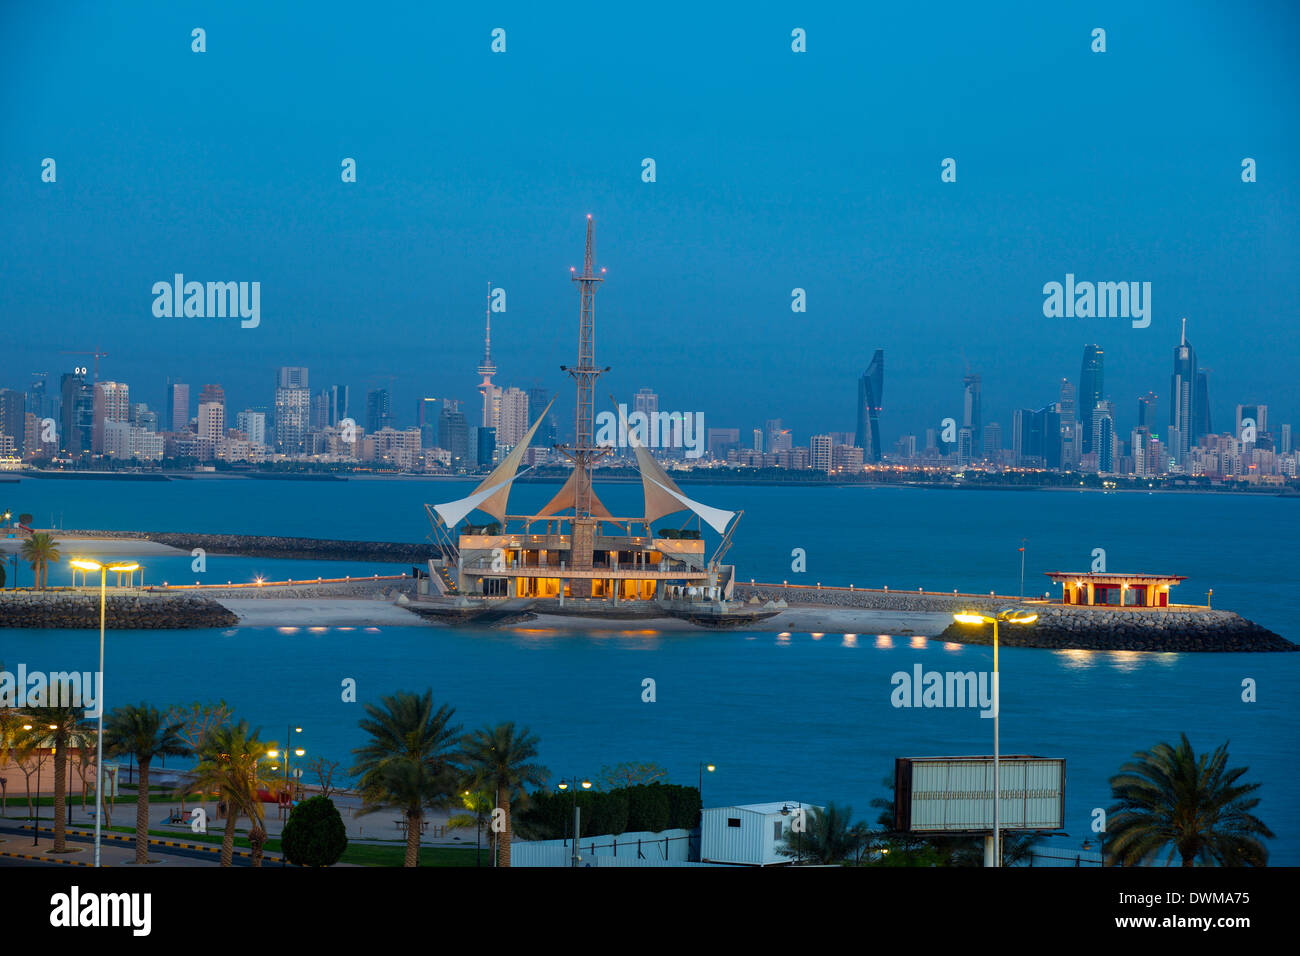 Marina Wellen Freizeit-Komplex, ein dreistöckiges Freizeit-Komplex, Salmiya, Kuwait-Stadt, Kuwait, Naher Osten Stockfoto